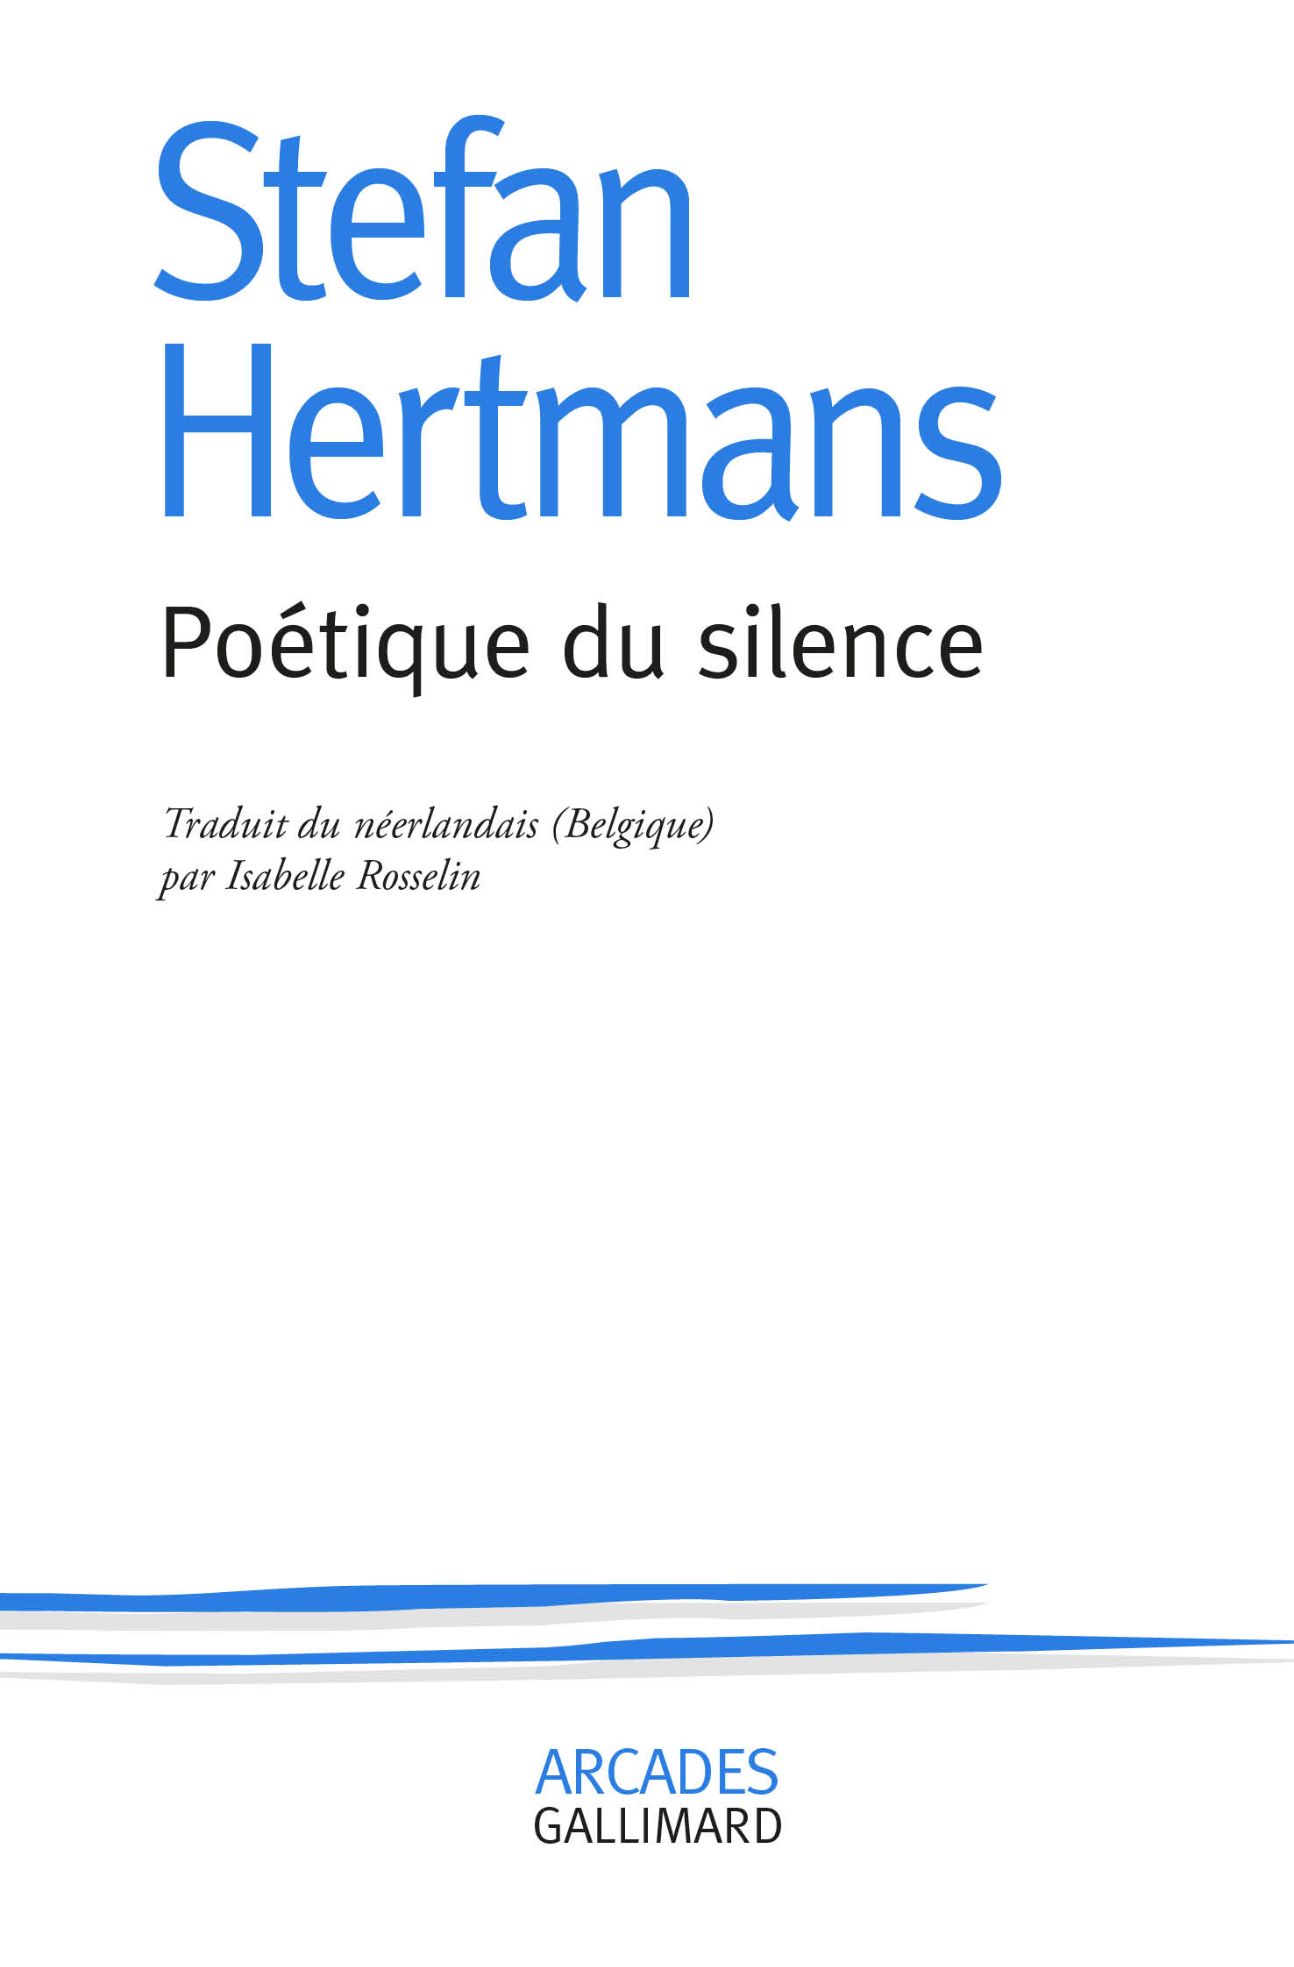 Stefan Hertmans, Poétique du silence